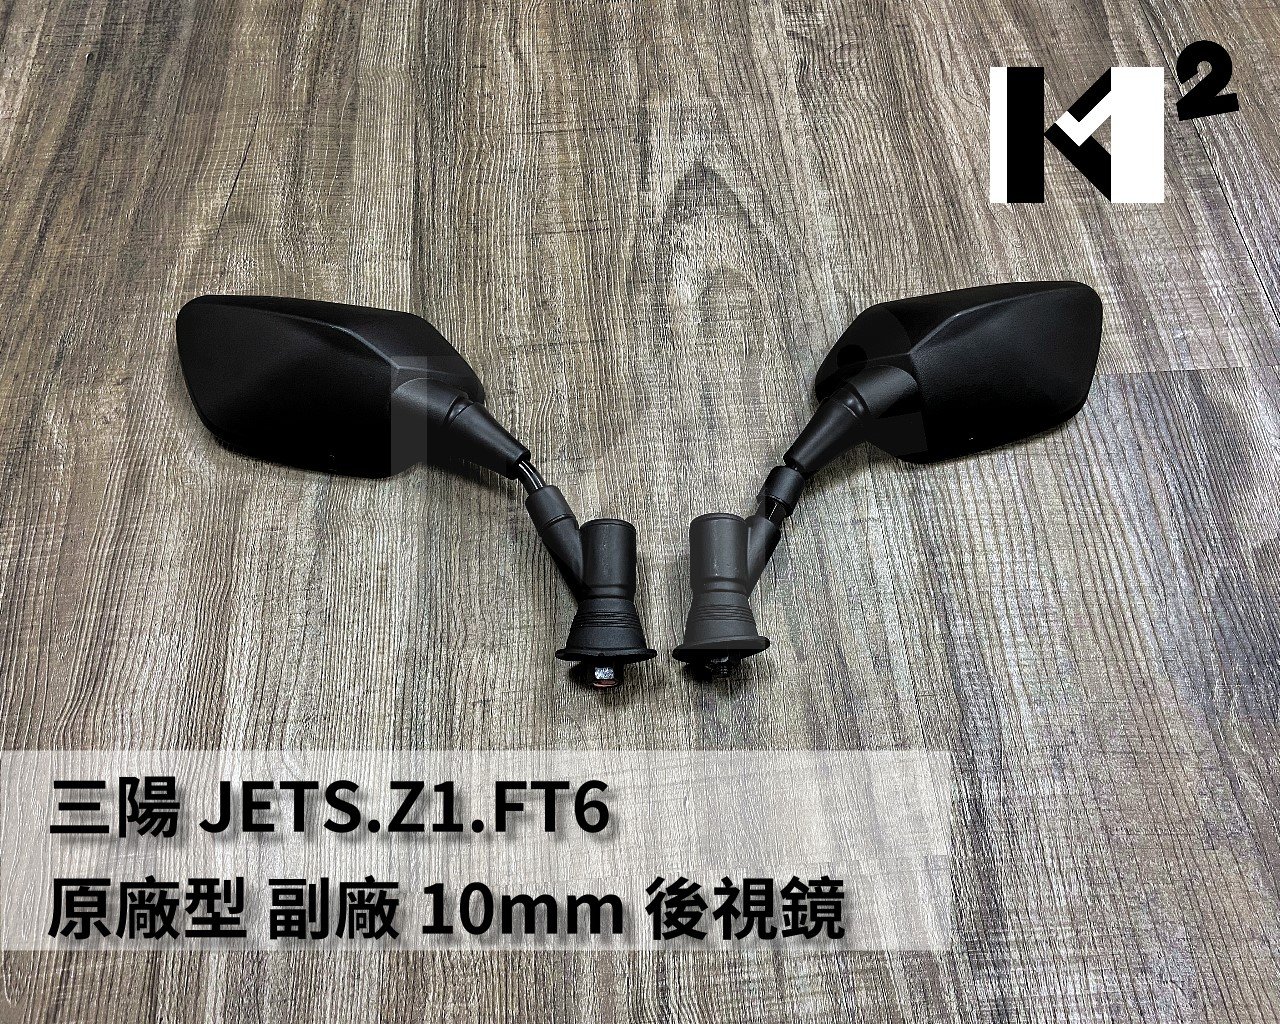 材料王⭐三陽 JETS.Z1.戰將六代.Fighter6.FZA 原廠型 副廠10mm 車鏡 後照鏡.後視鏡(單隻販售)